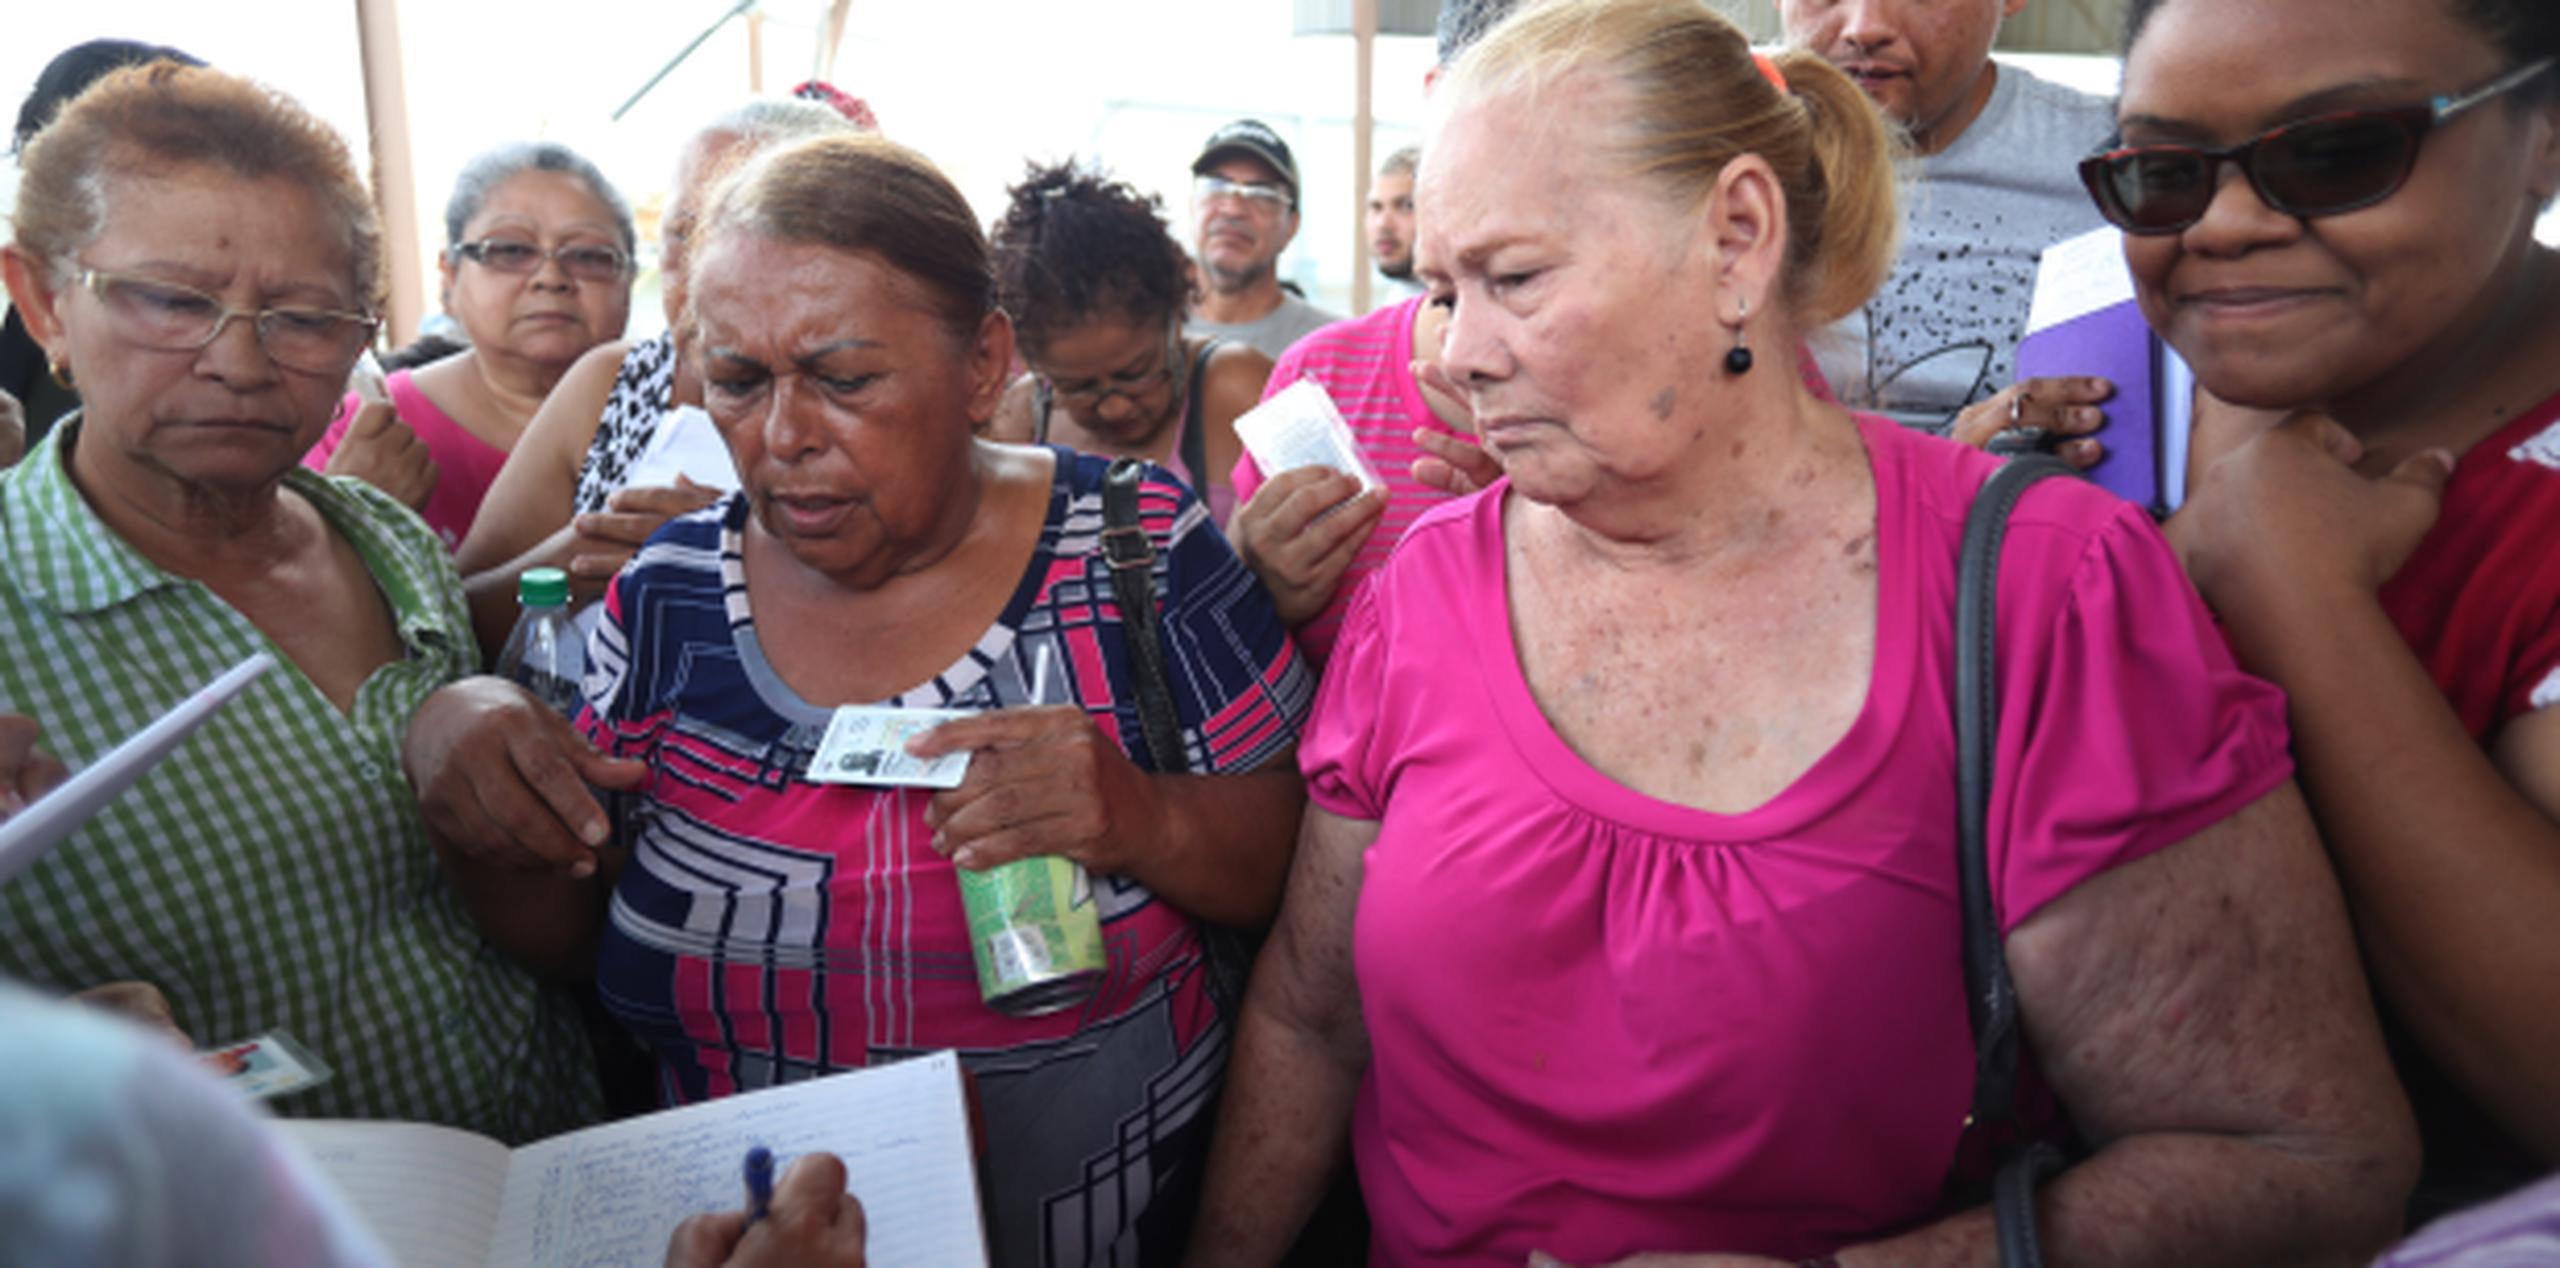 Más de 300 residentes en Las Piedras acudieron a la cancha del barrio Montones a solicitar la ayuda. (vanessa.serra@gfrmedia.com)